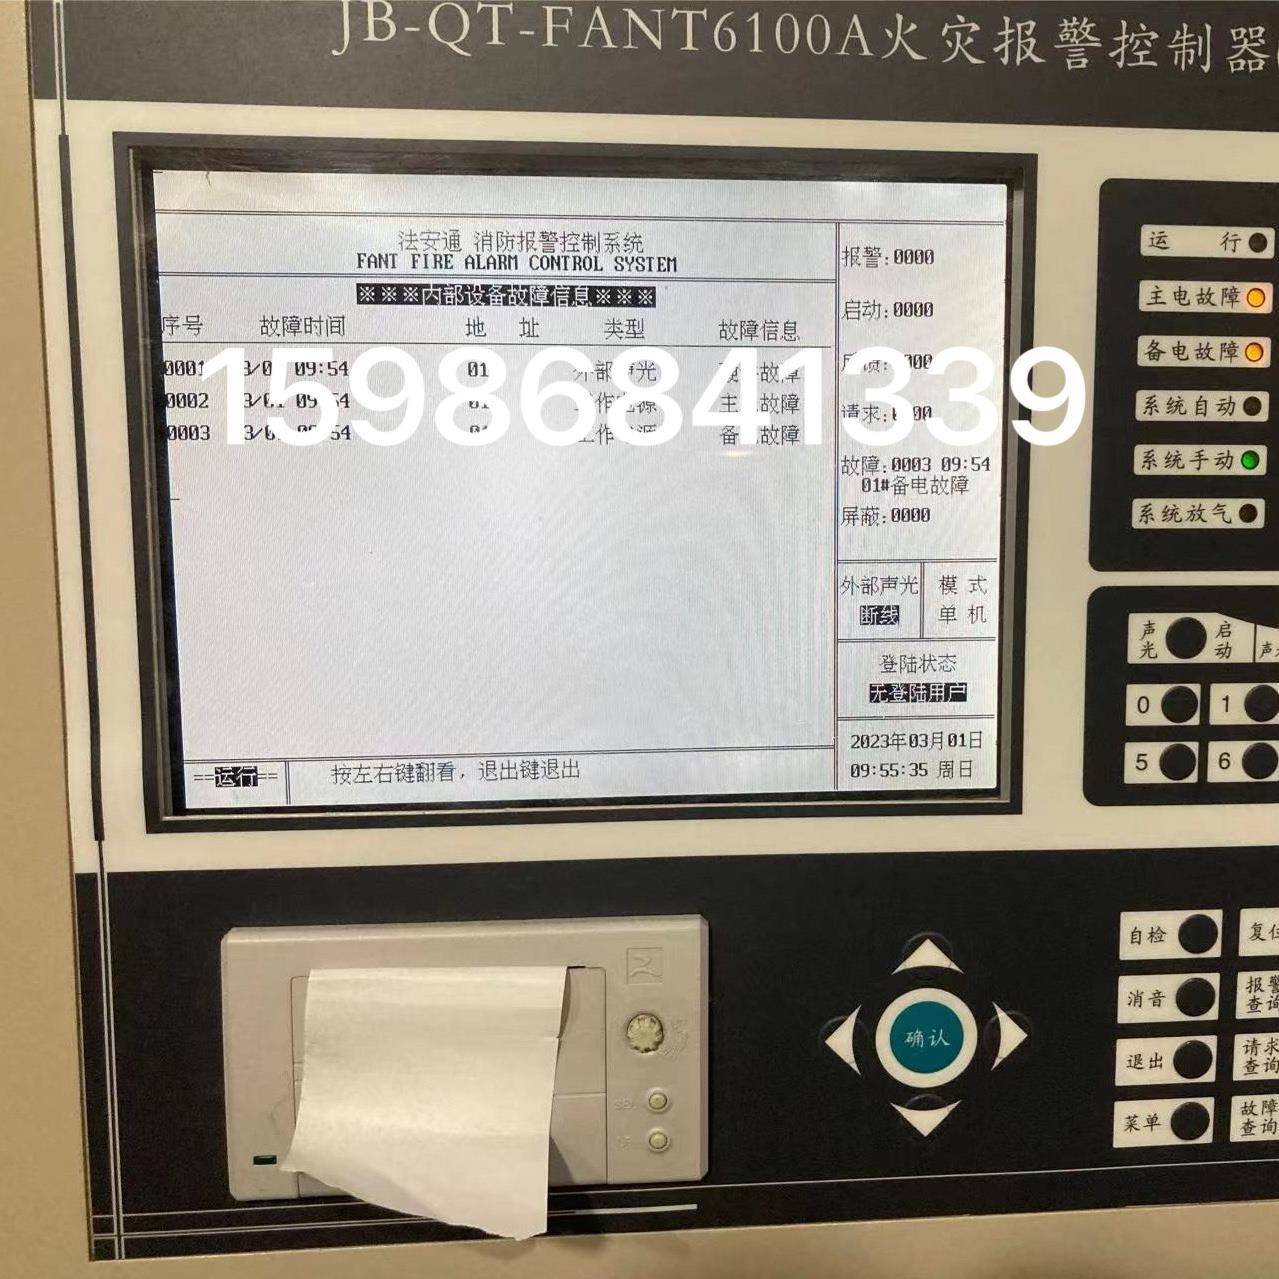 北京法安通JB-QT-FANT6100A火灾报警控制器液晶显示屏 SP24V001